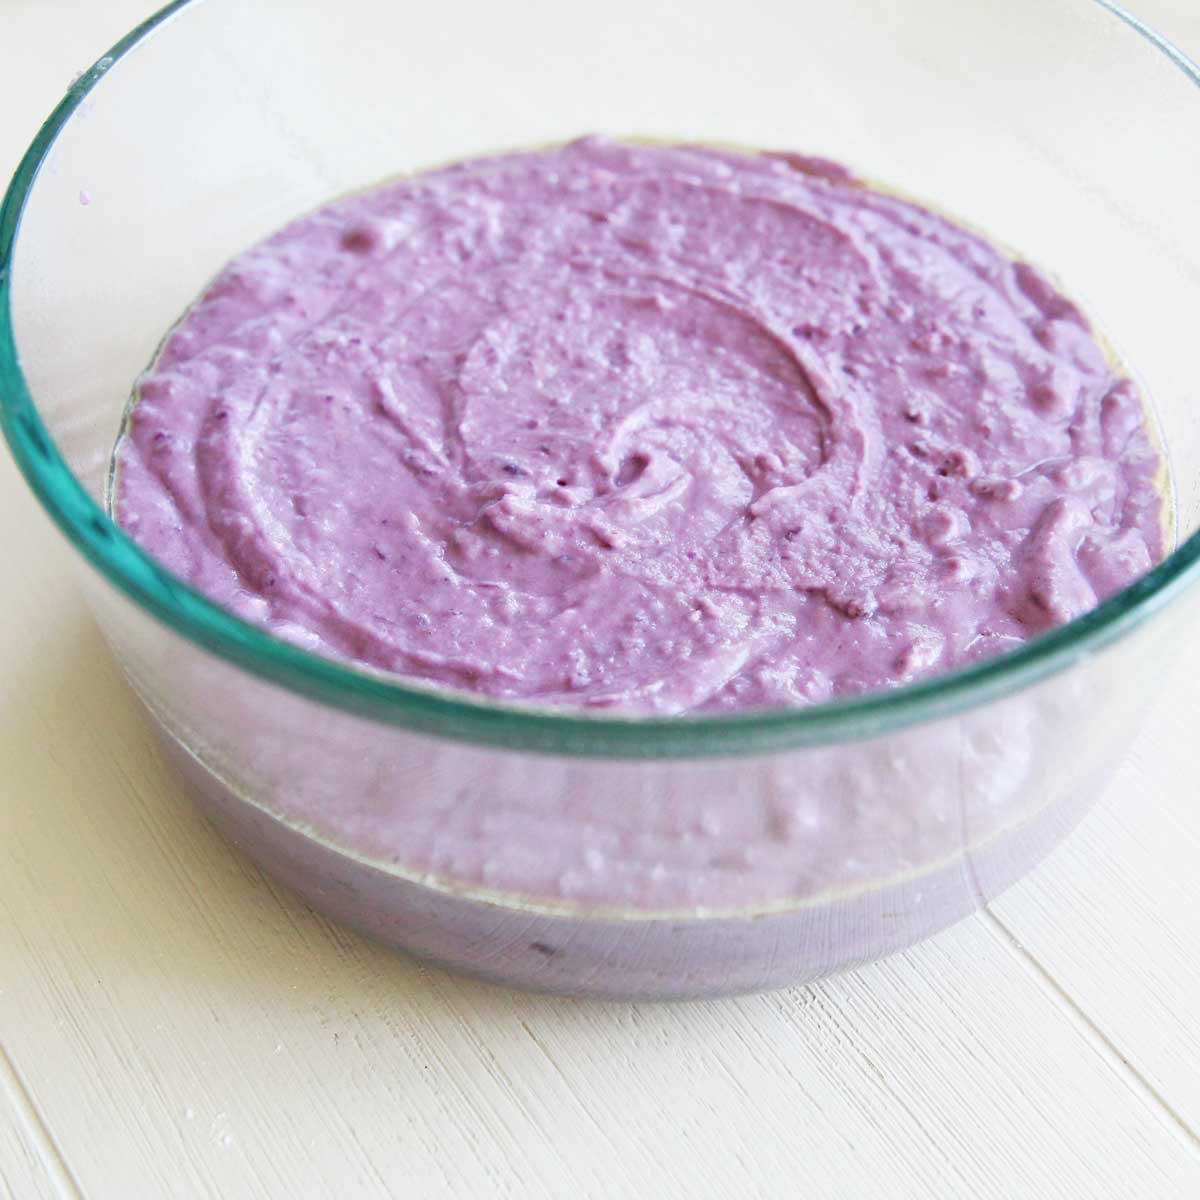 Deliciously Purple Ube Mochi Cake (Baked Nian Gao) - Ube Mochi Cake